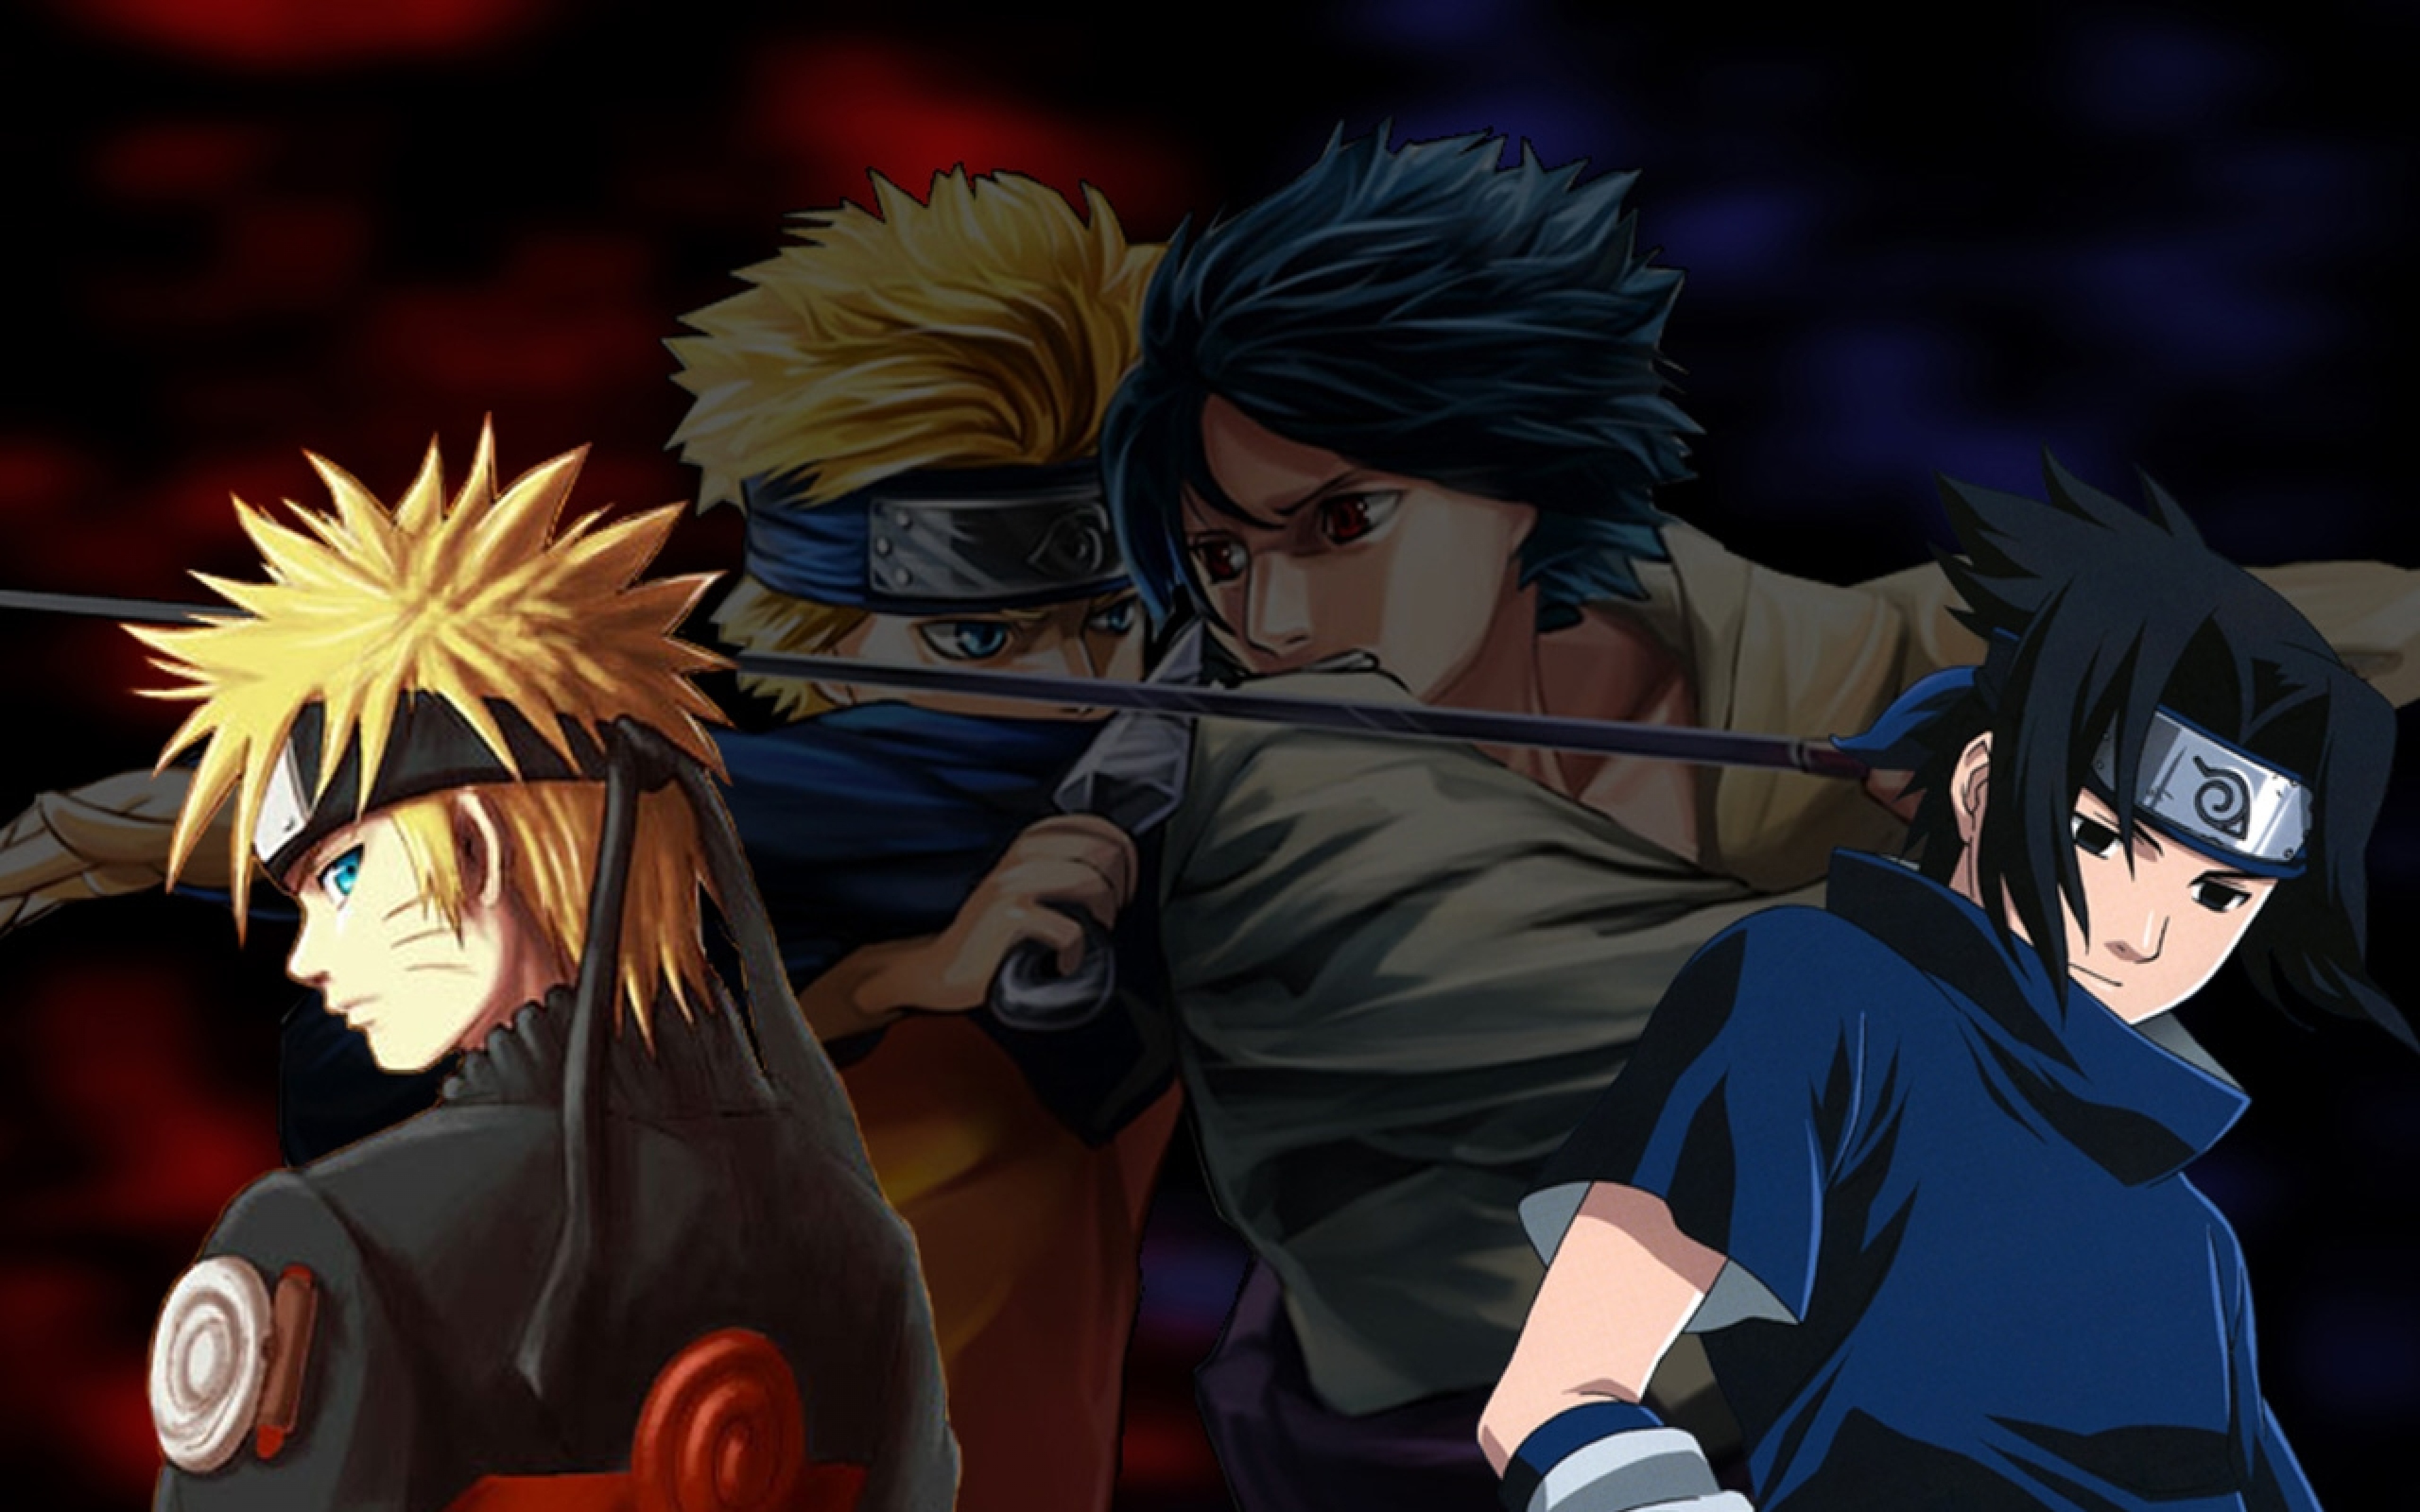 Cùng ngắm nhìn hình nền Naruto và Sasuke đầy hấp dẫn, với những màn đấu trí tài năng và sức mạnh phi thường. Wallpaper này sẽ khiến bạn cảm thấy như đang tham gia vào cuộc phiêu lưu của nhóm trẻ tuổi này.